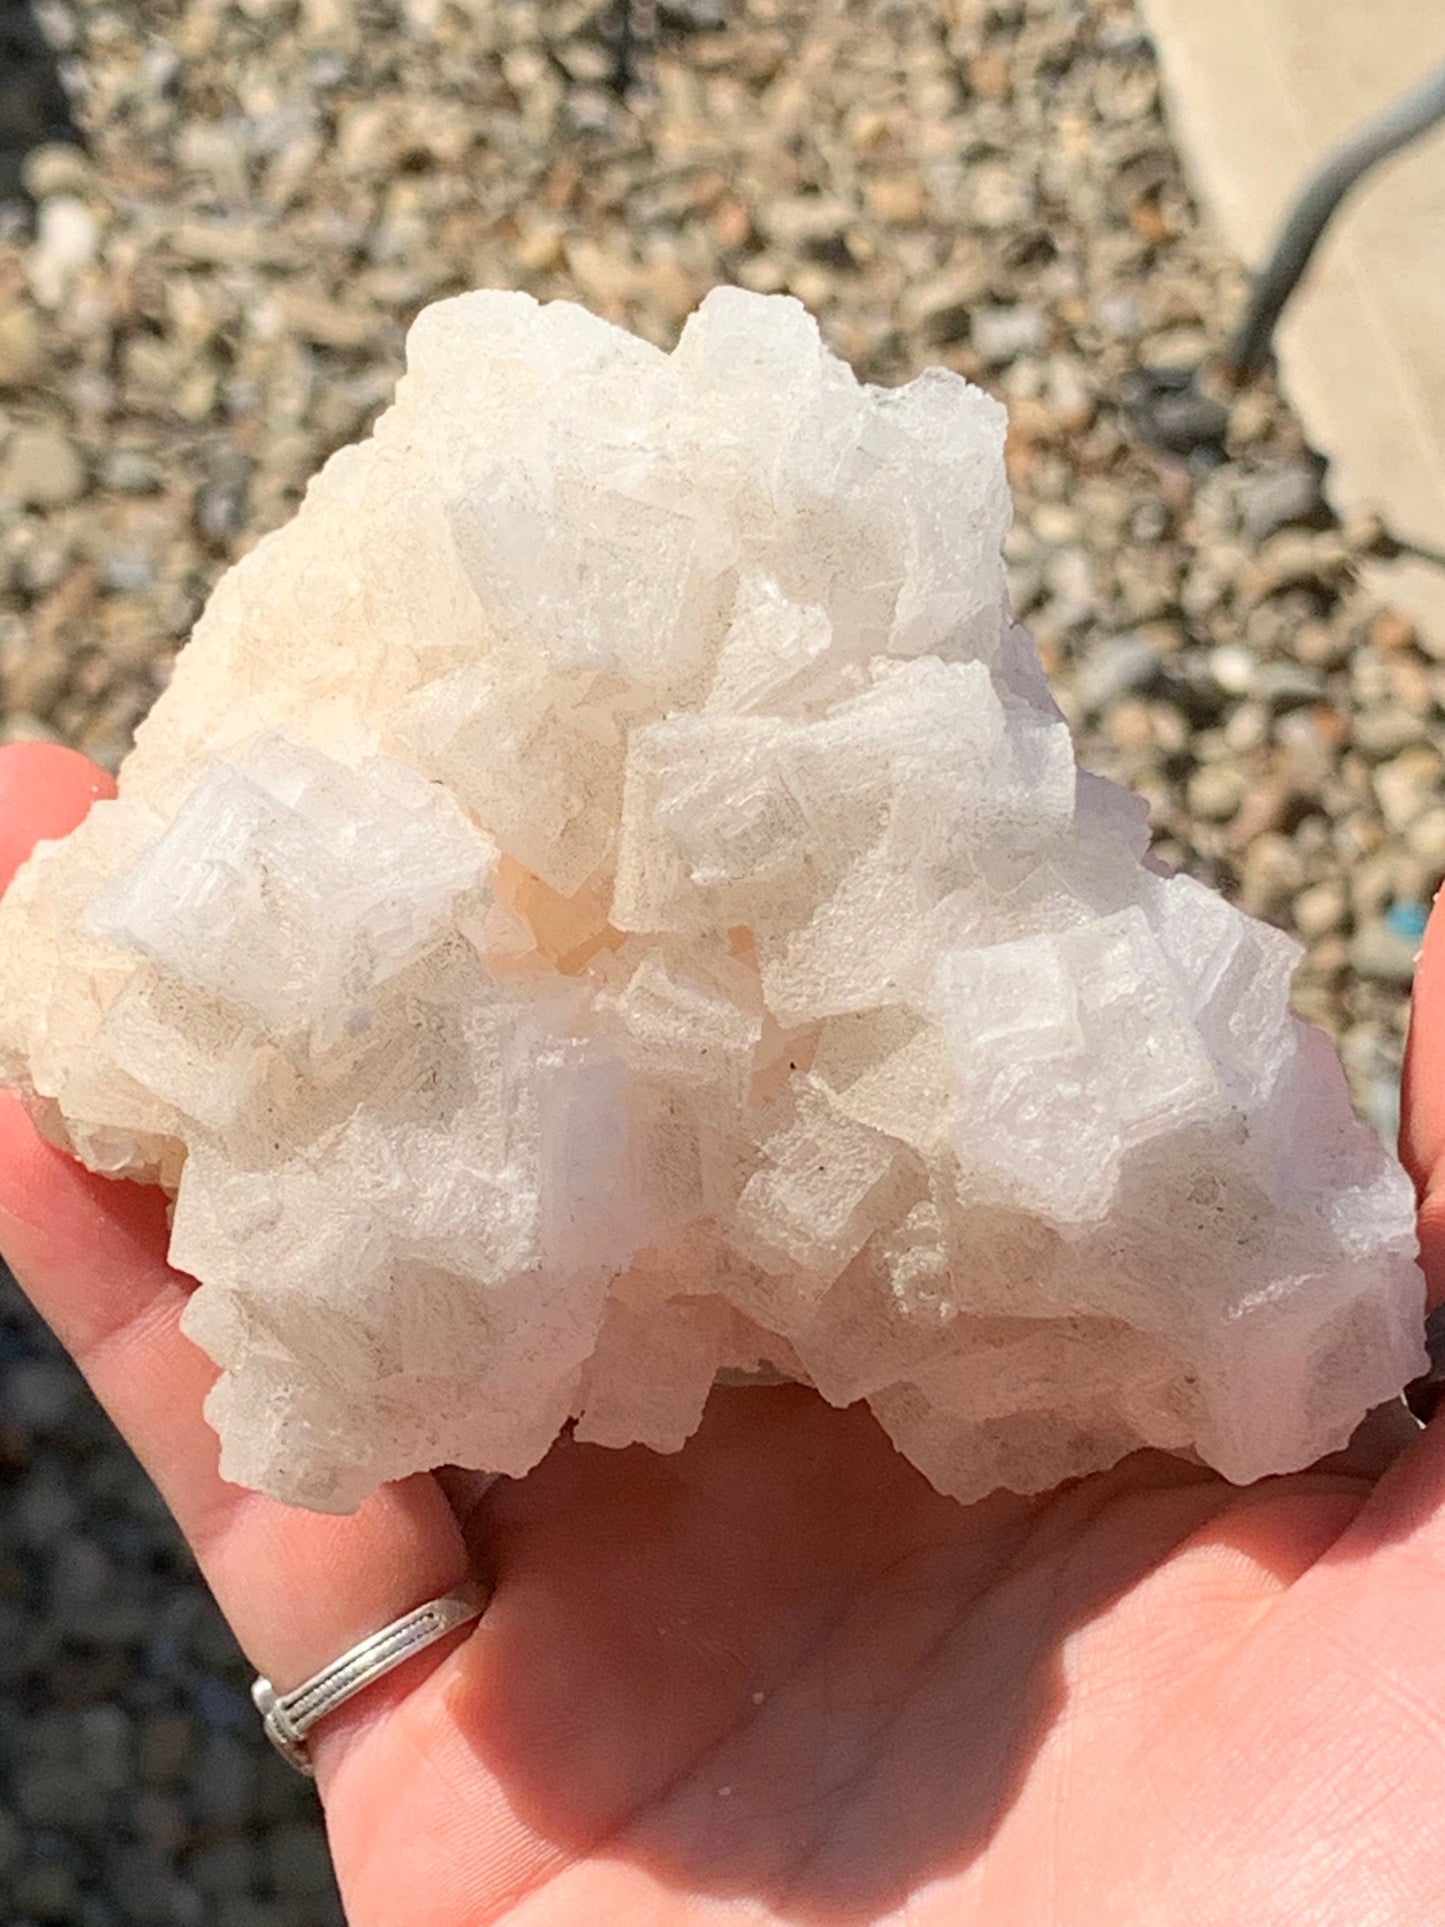 Pink Halite Large Salt Crystal Mineral Specimen